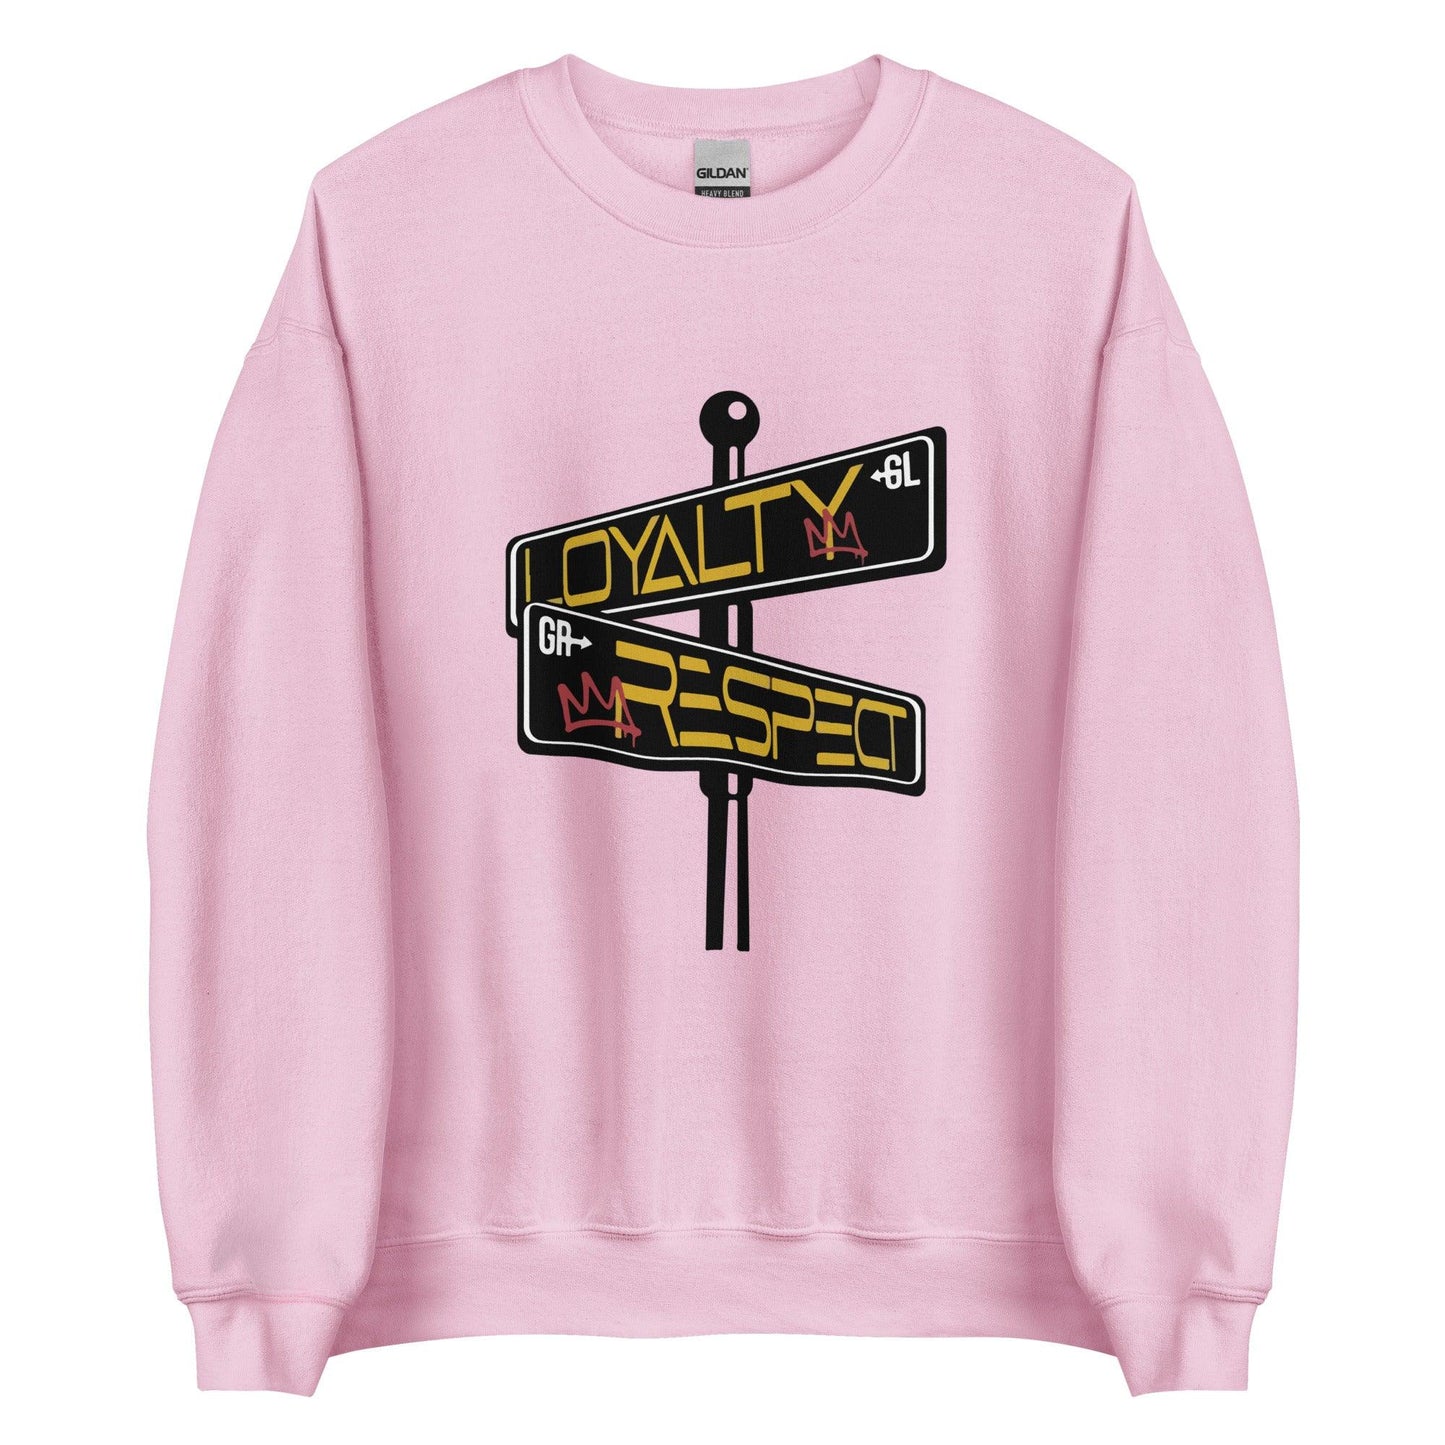 Kesean Carter "Essential" Sweatshirt - Fan Arch